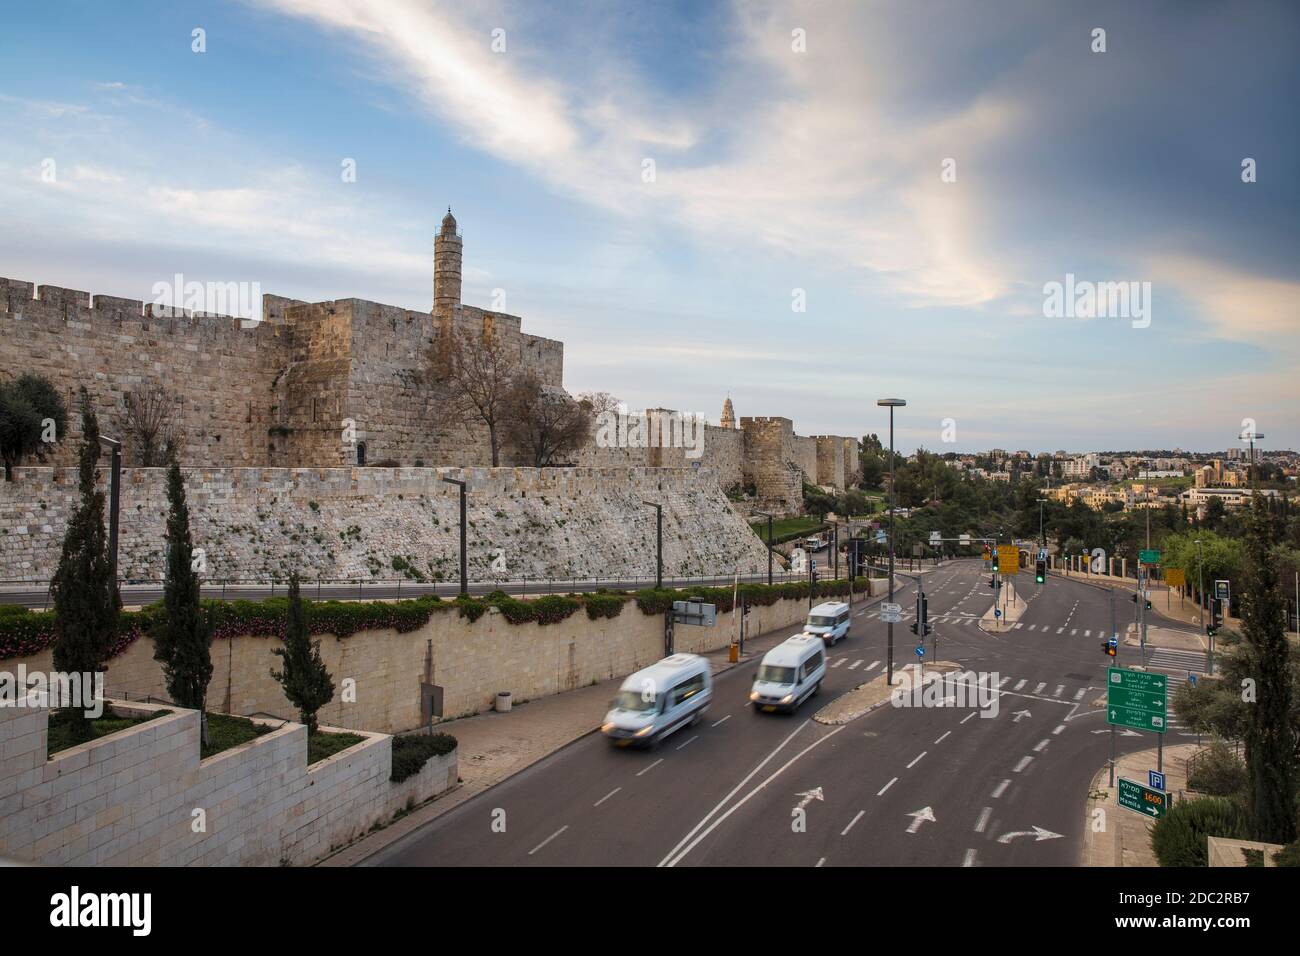 Israel, Jerusalem, View of Jaffa Gate Stock Photo